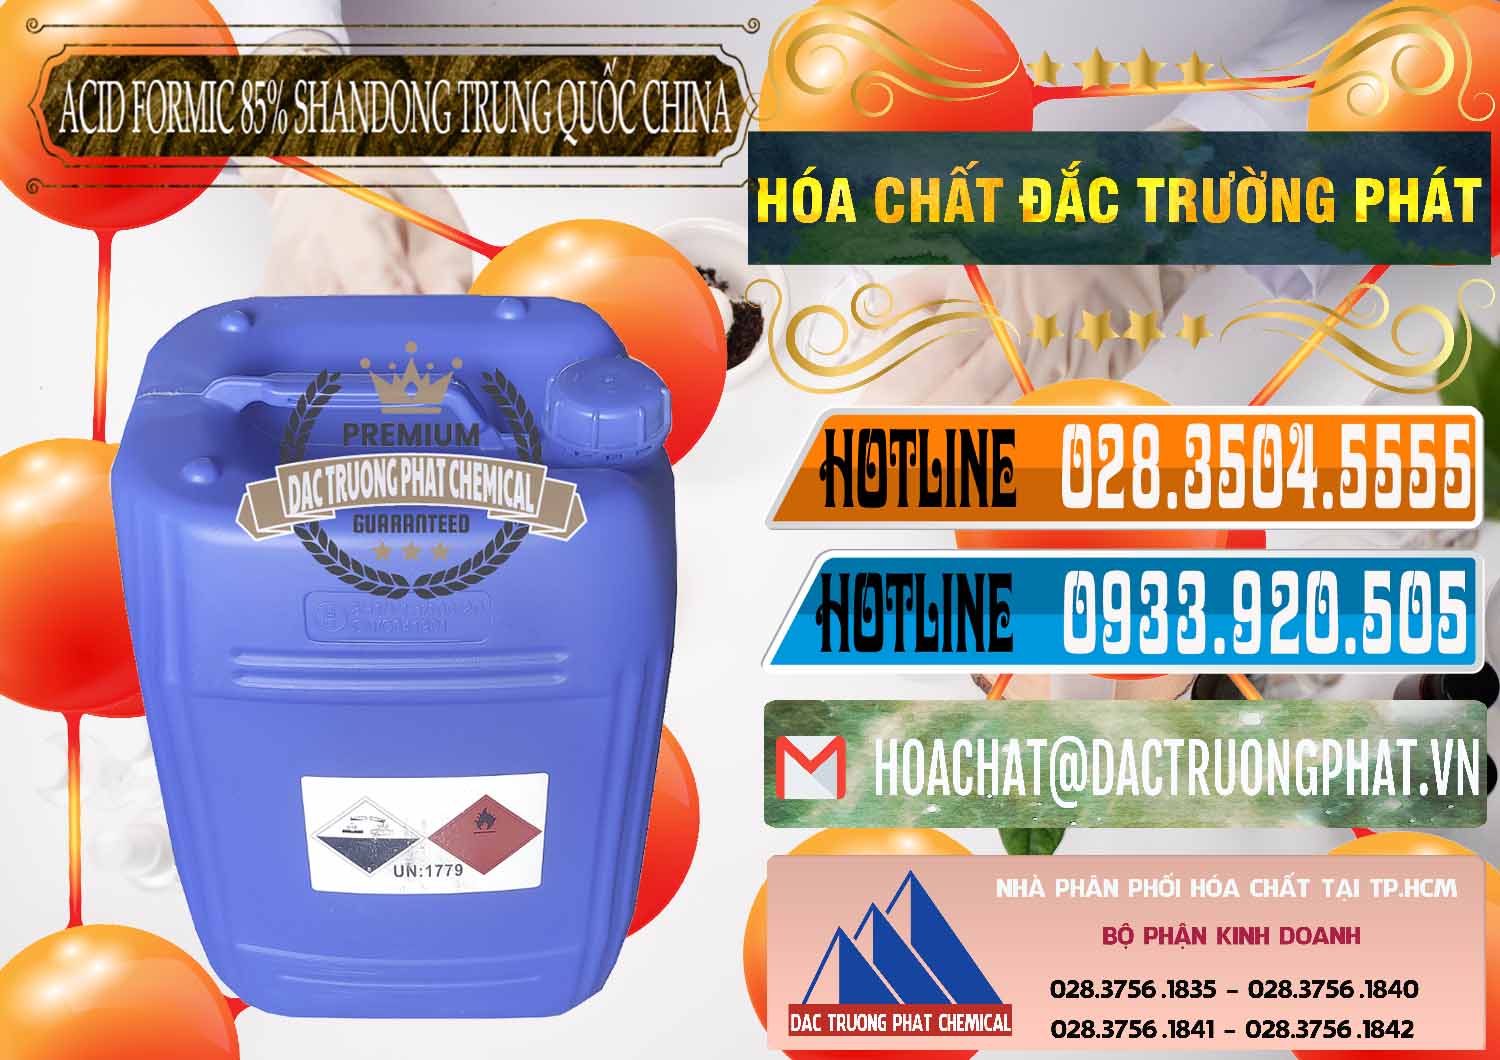 Đơn vị bán _ cung ứng Acid Formic - Axit Formic 85% Shandong Trung Quốc China - 0235 - Cty cung cấp - nhập khẩu hóa chất tại TP.HCM - stmp.net